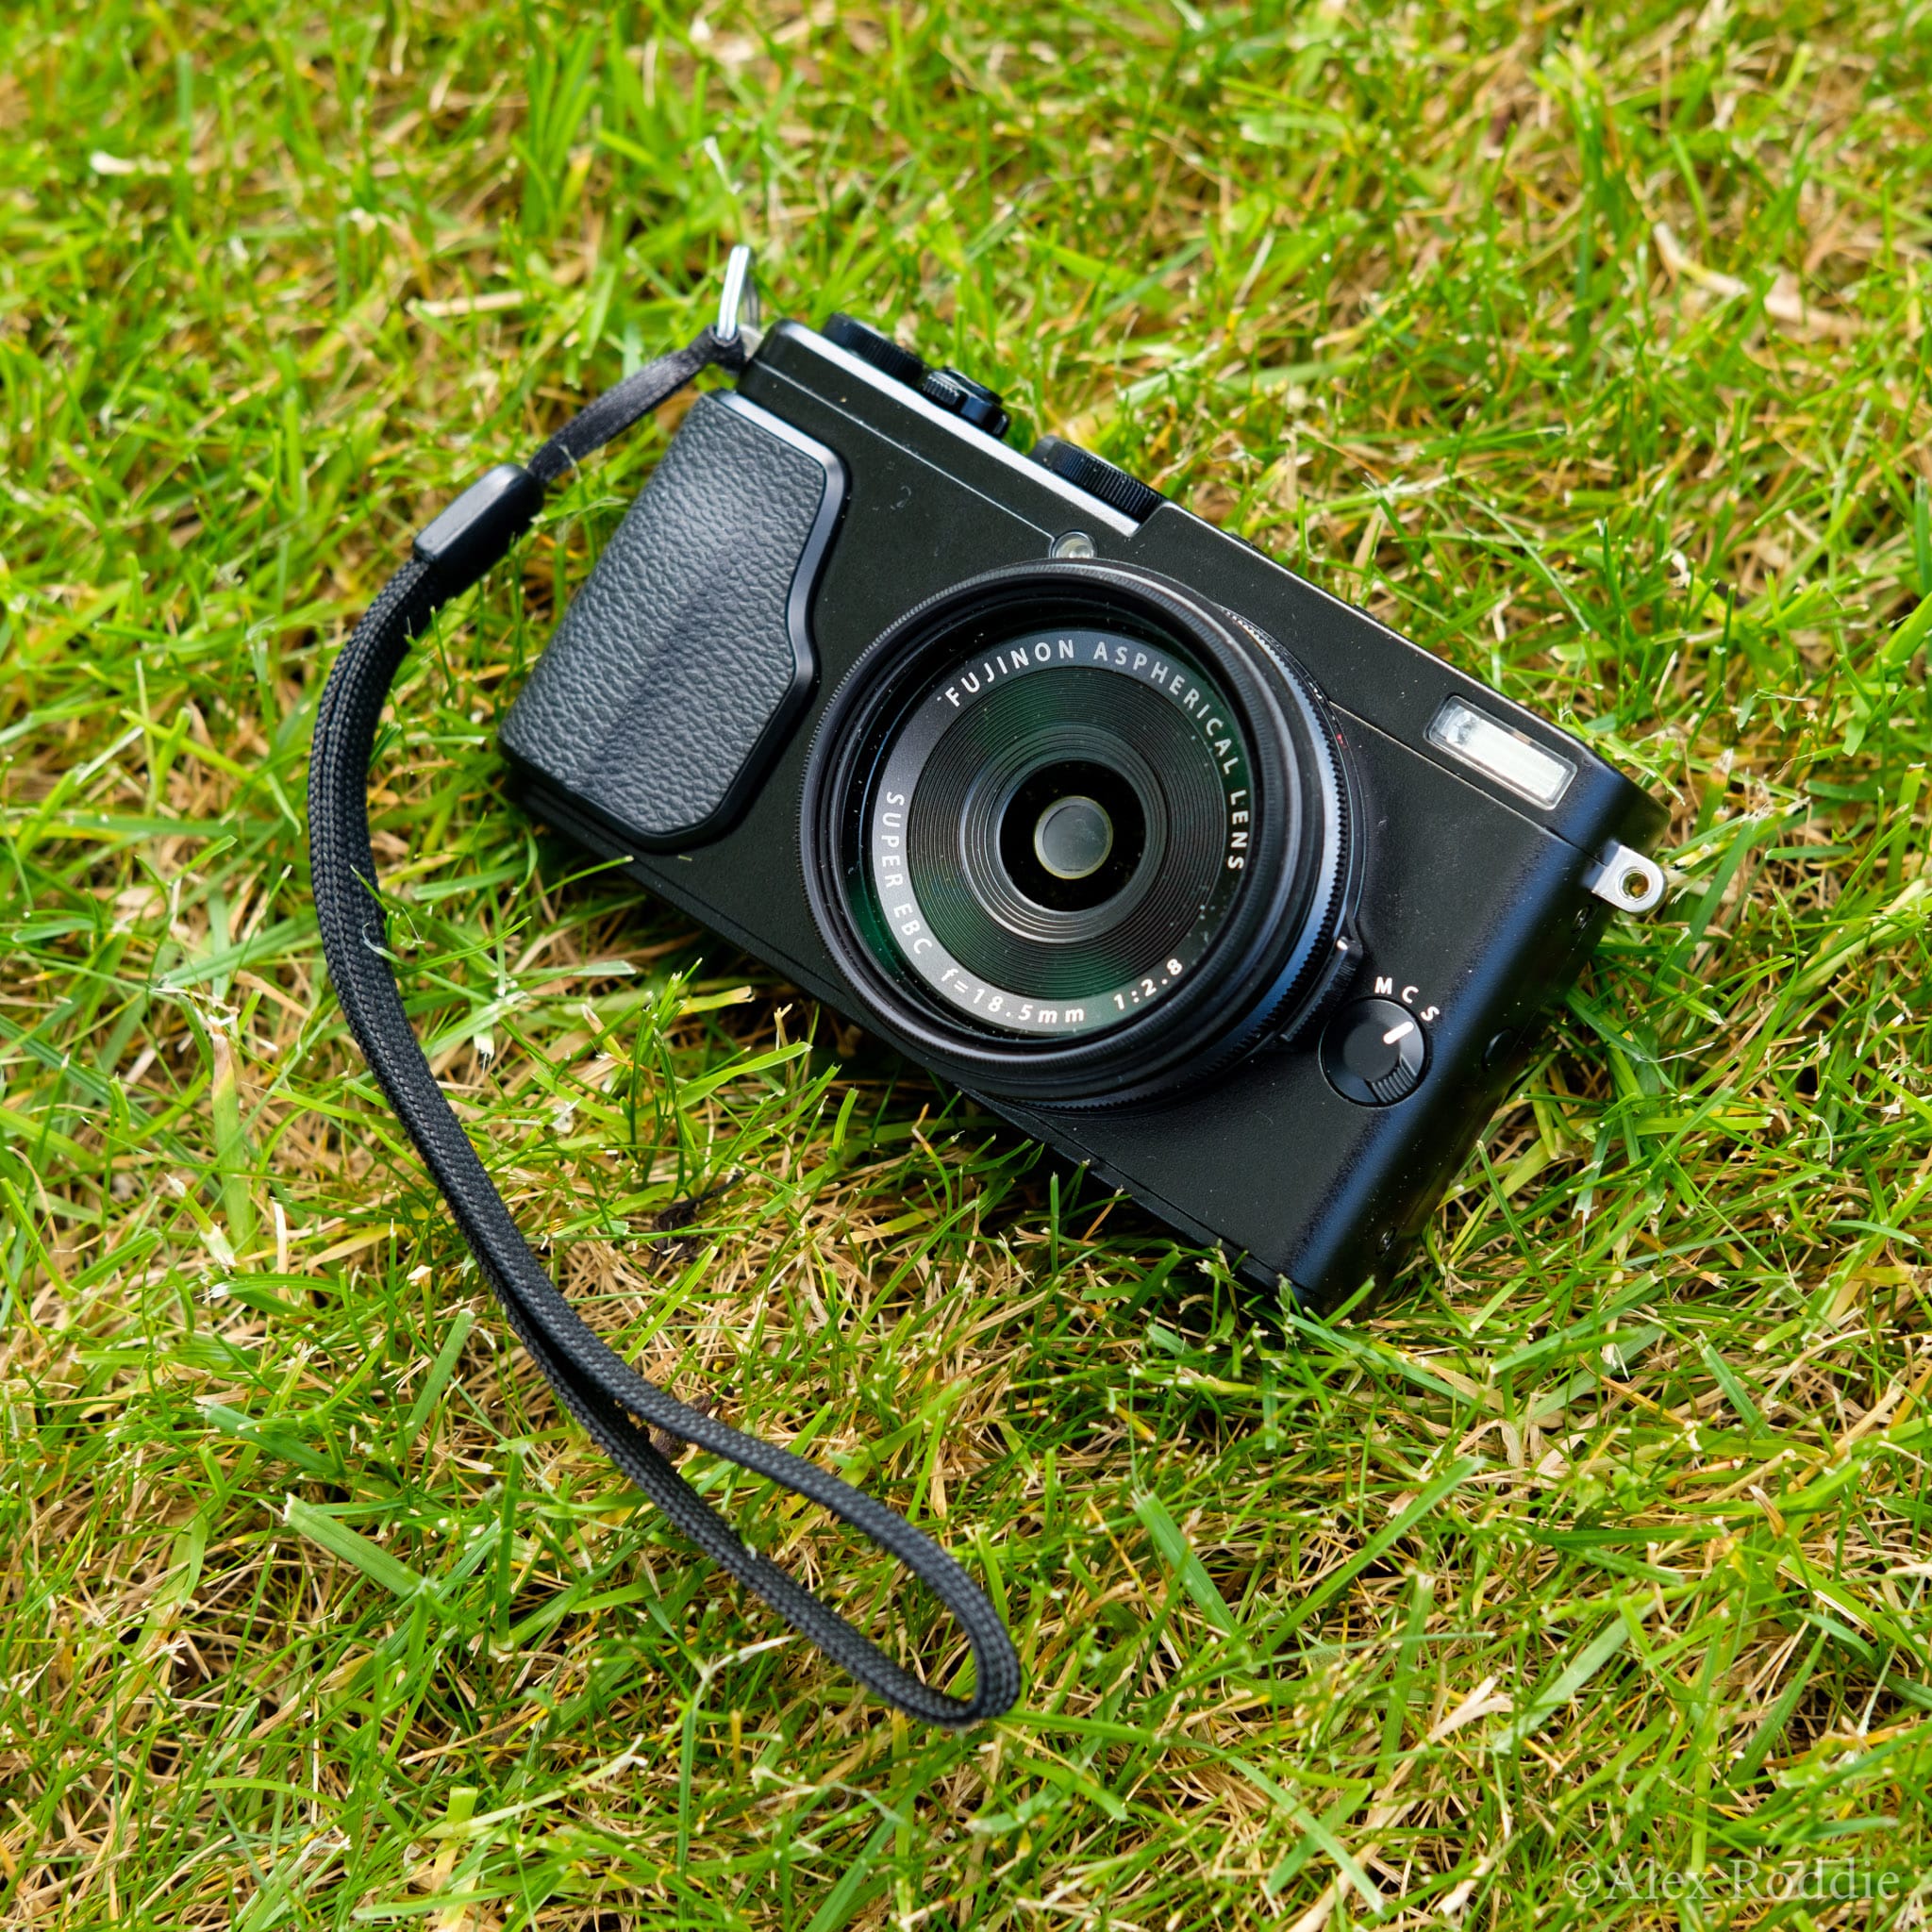 aan de andere kant, Jumping jack maandag First look: Fujifilm X70. The ultimate backpacker's camera? | Alex Roddie